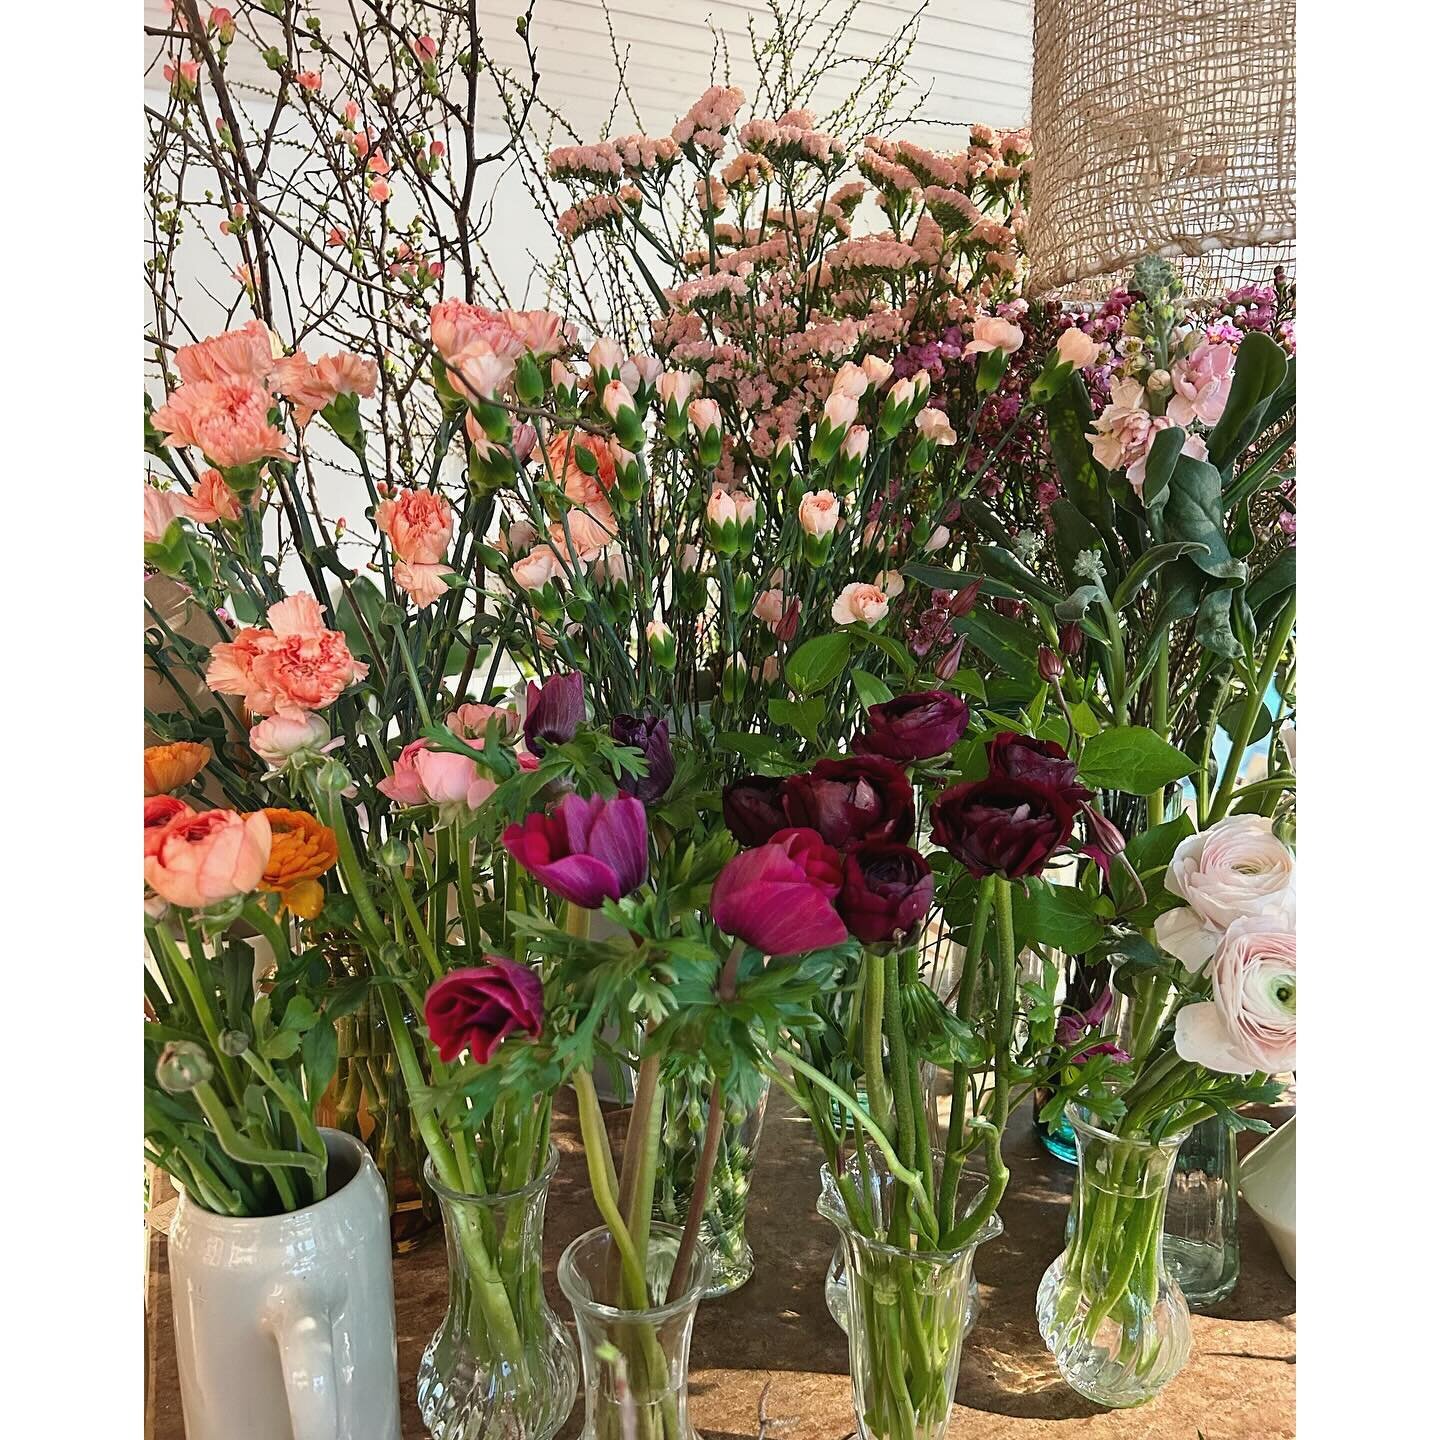 Samstag offen 8.30 - 12.00 Uhr &amp; 14.00 - 16.30 Uhr 🌸

Freu mi uf eu!

#blumen #weekendfowers #weareopen #shoplocal #flowers #flowerlovers #botanique #pf&auml;ffikonsz